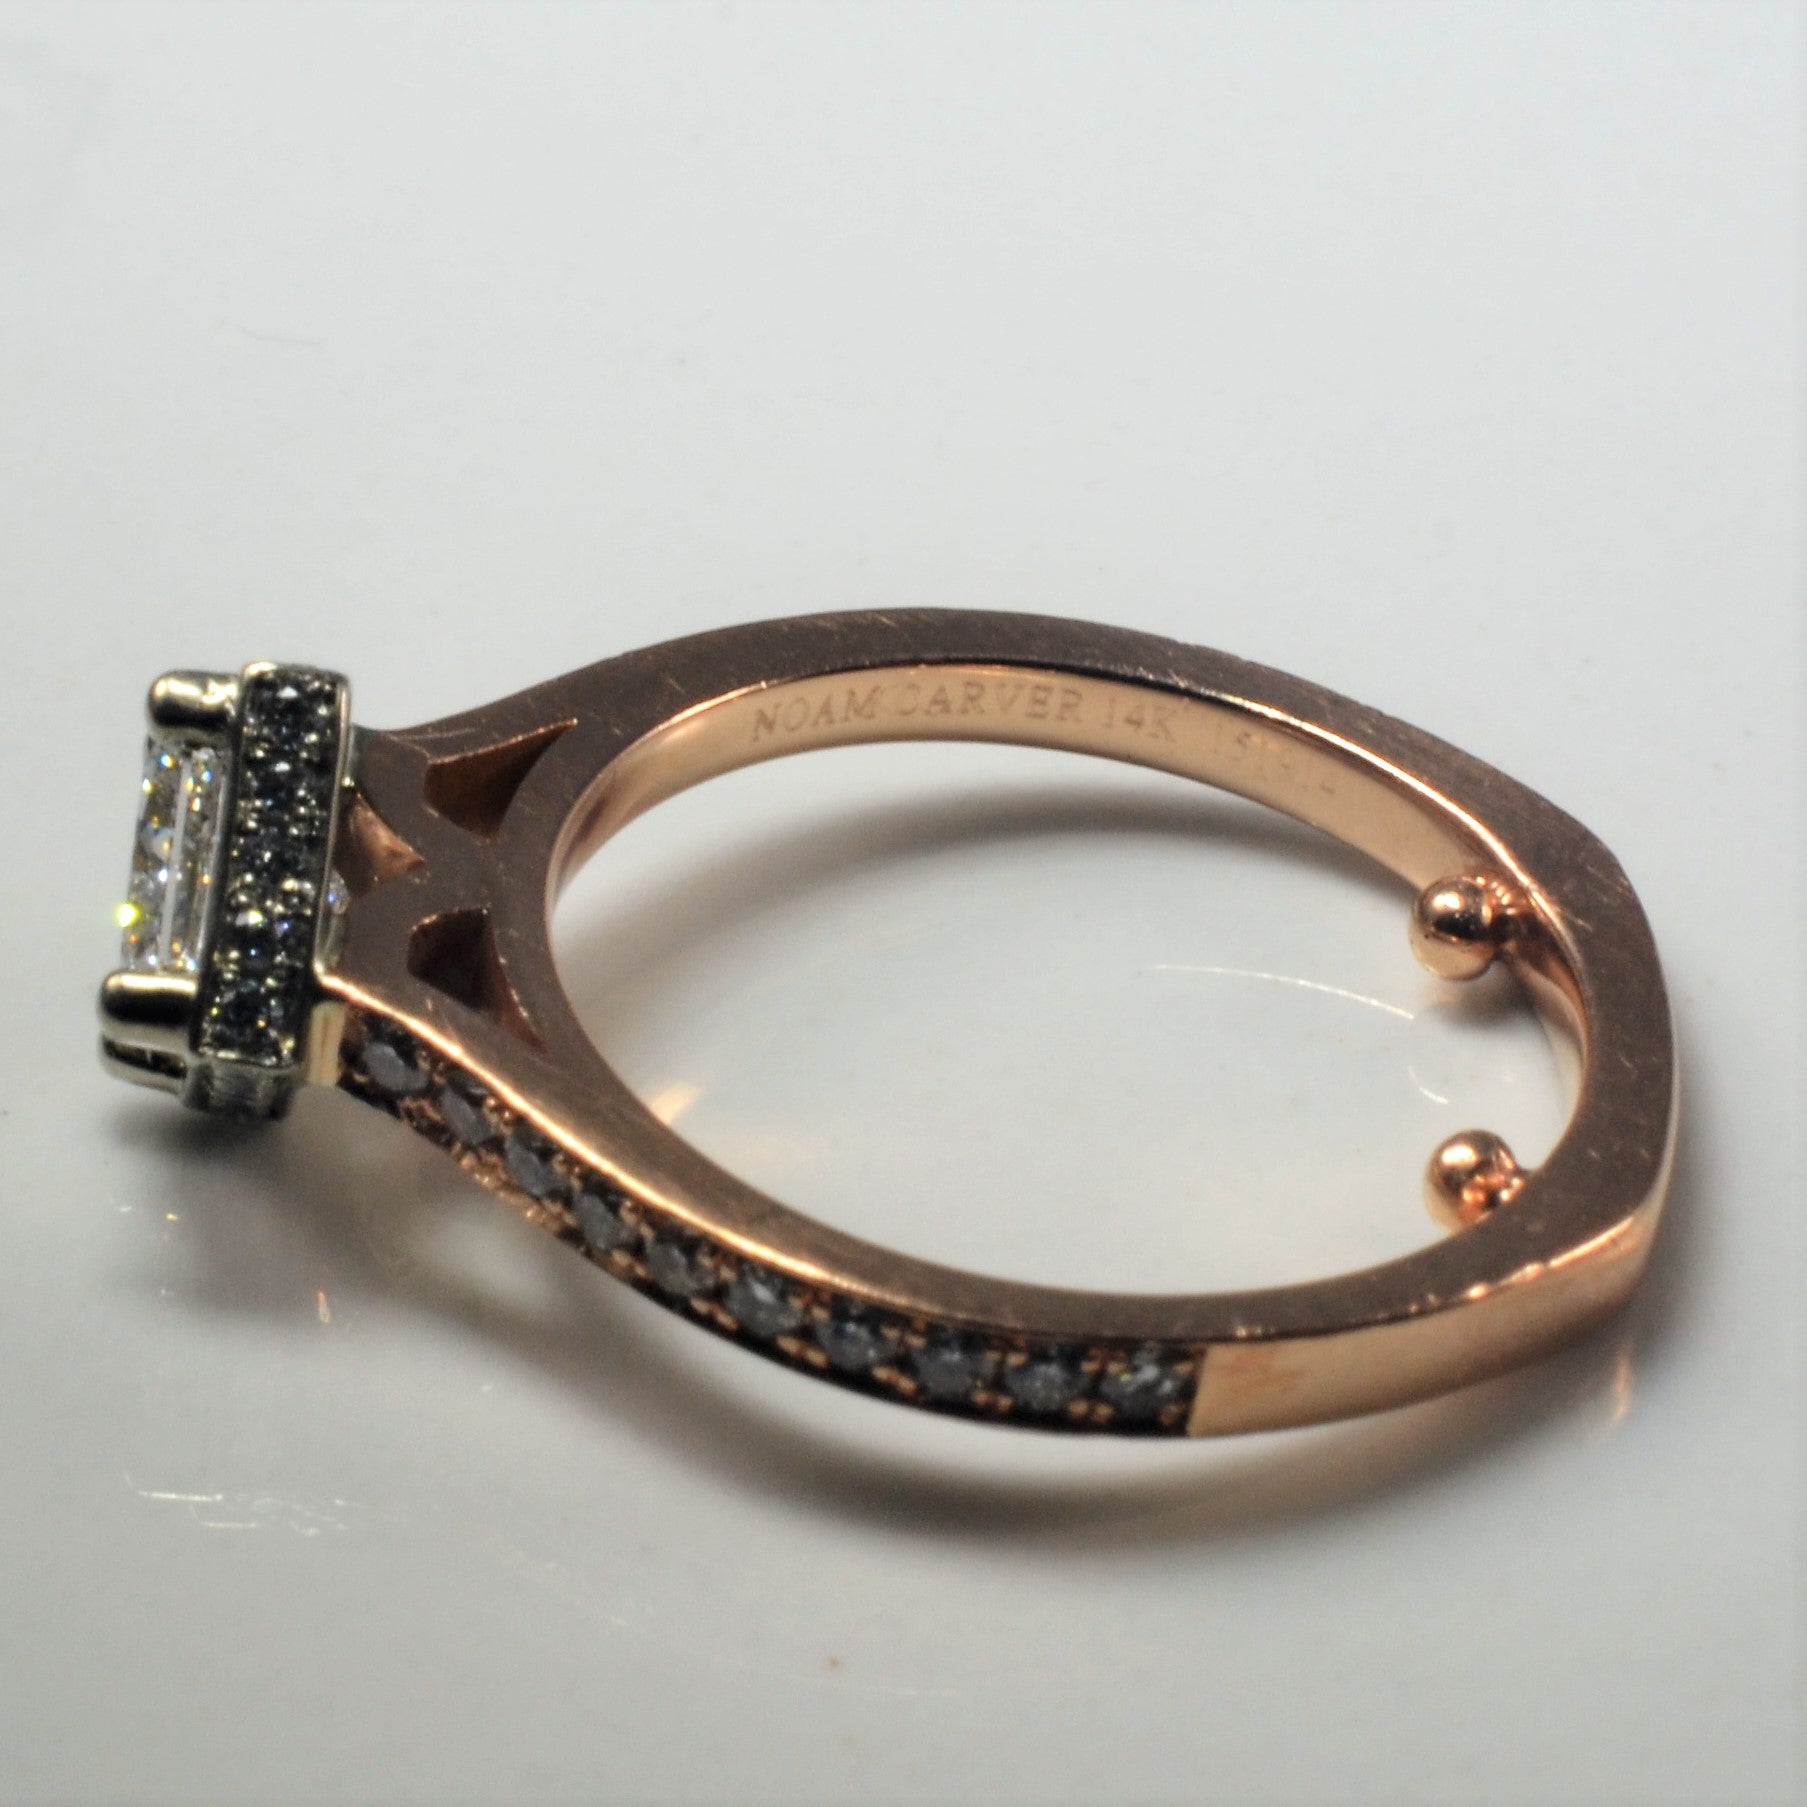 'Noam Carver' East West Princess Diamond Engagement Ring | 0.94ctw | SZ 4.75 |